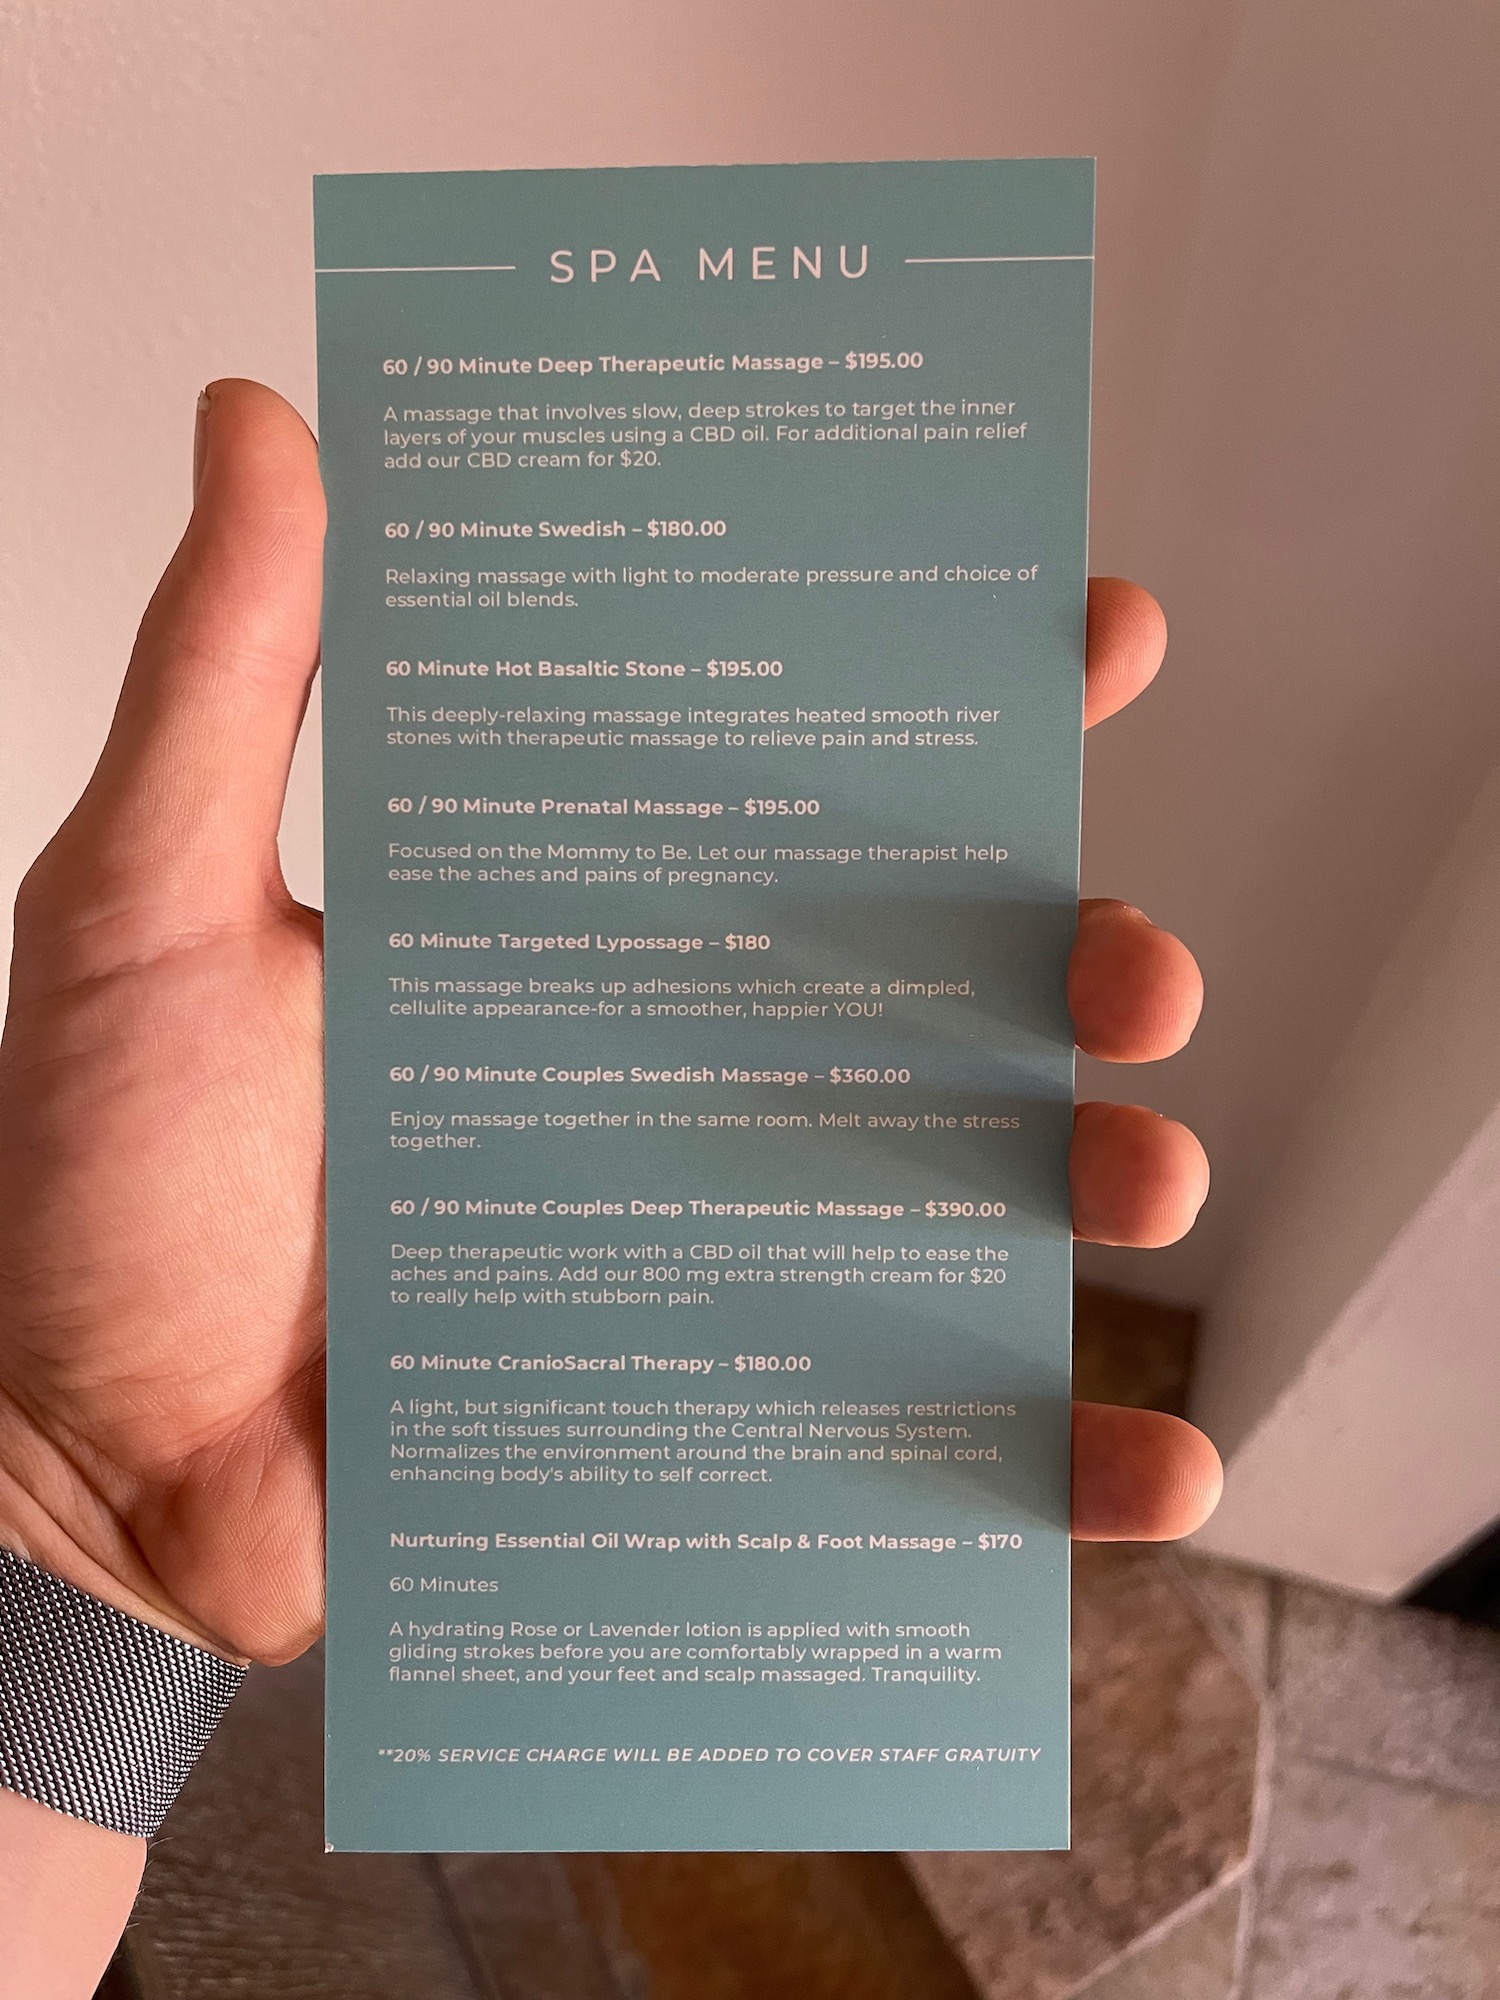 a hand holding a menu